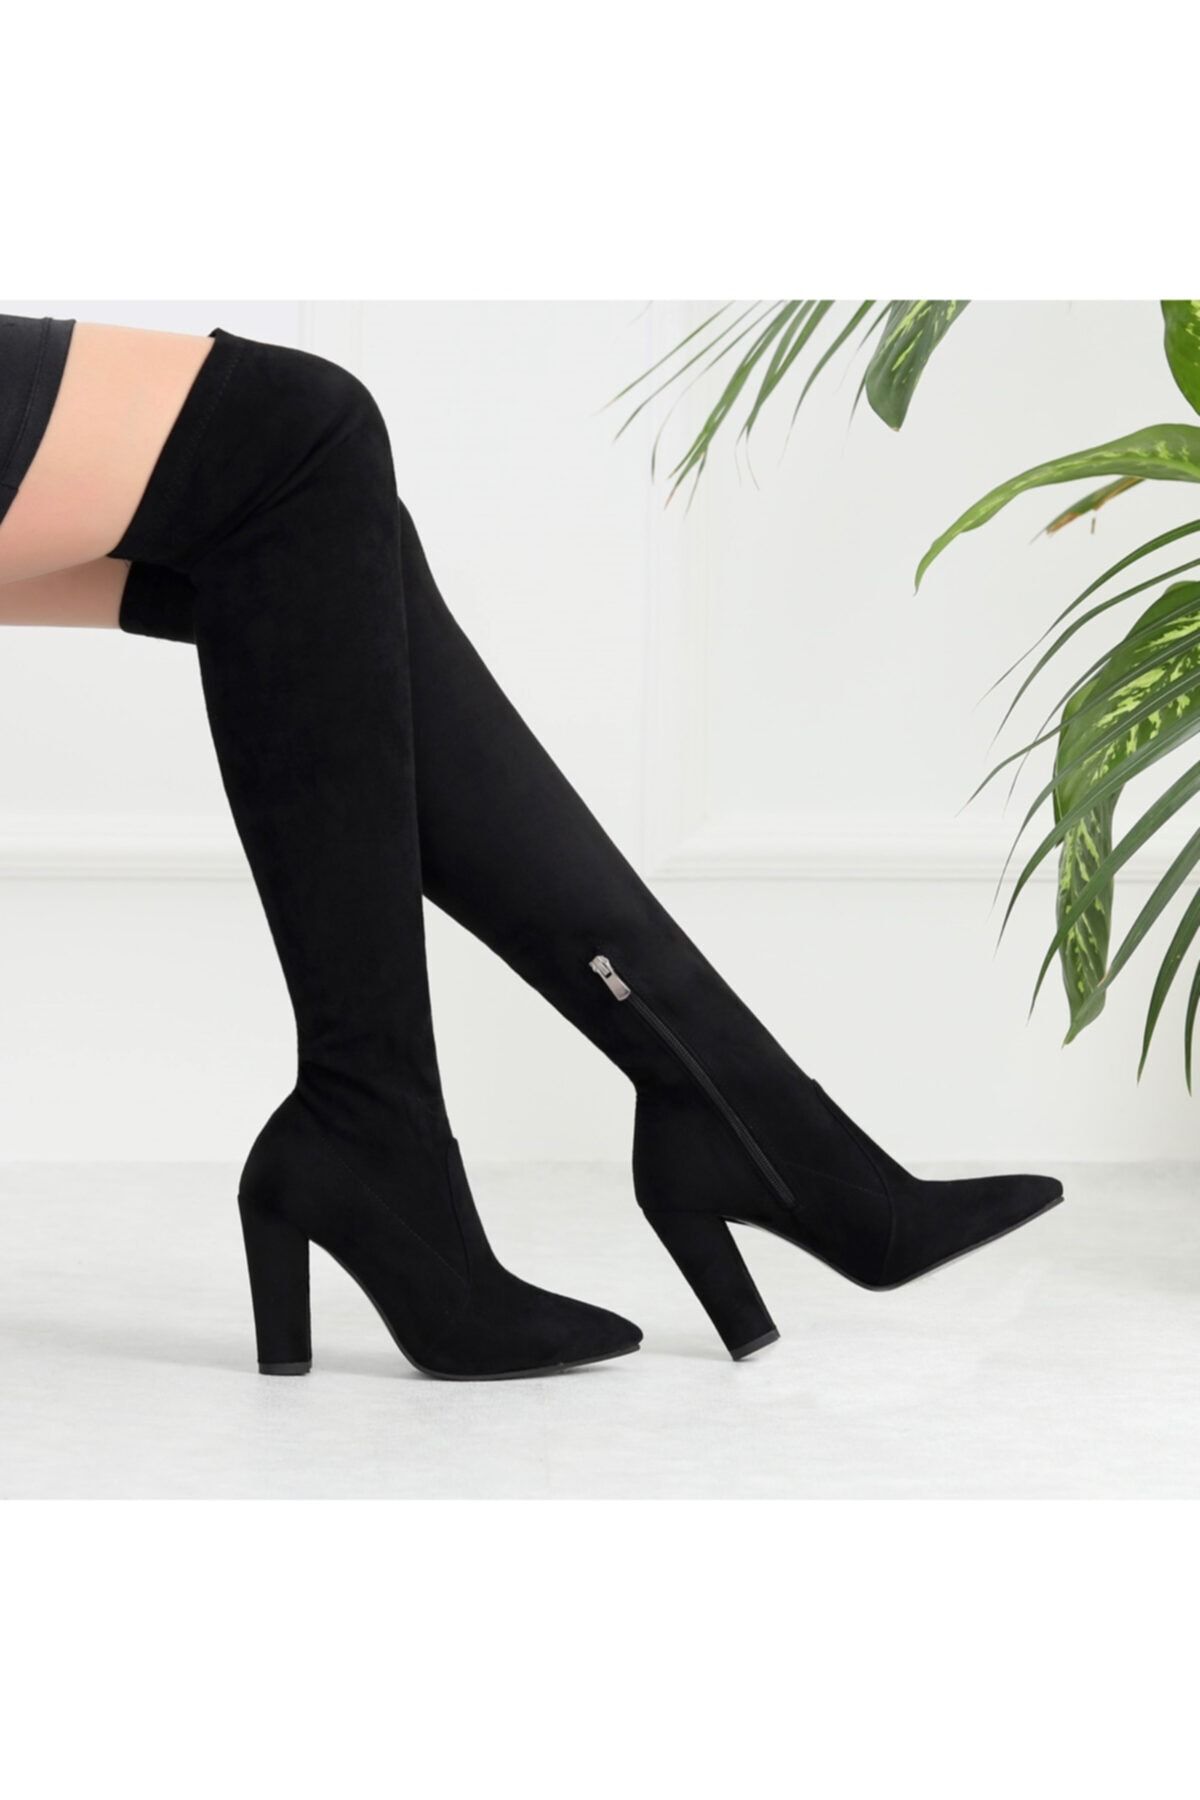 TrendyAnka Kadın Siyah Çorap Çizme 10 cm Topuklu Diz Üstü Sivri Burun Esnek ve Süet Streç Çizme